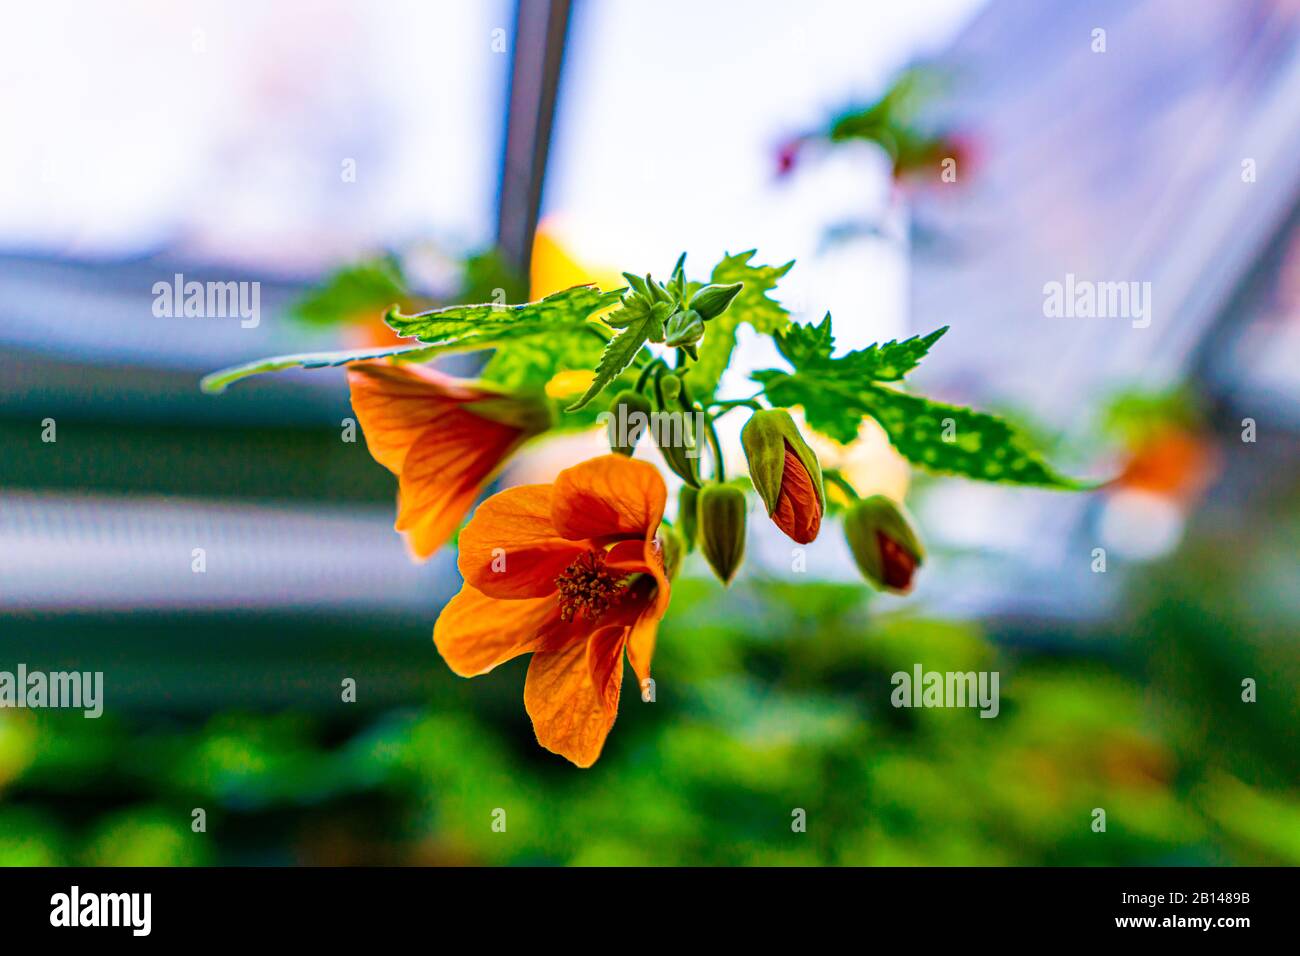 Abutilon Pictum Thompsonii - Flowering Maple Stock Photo